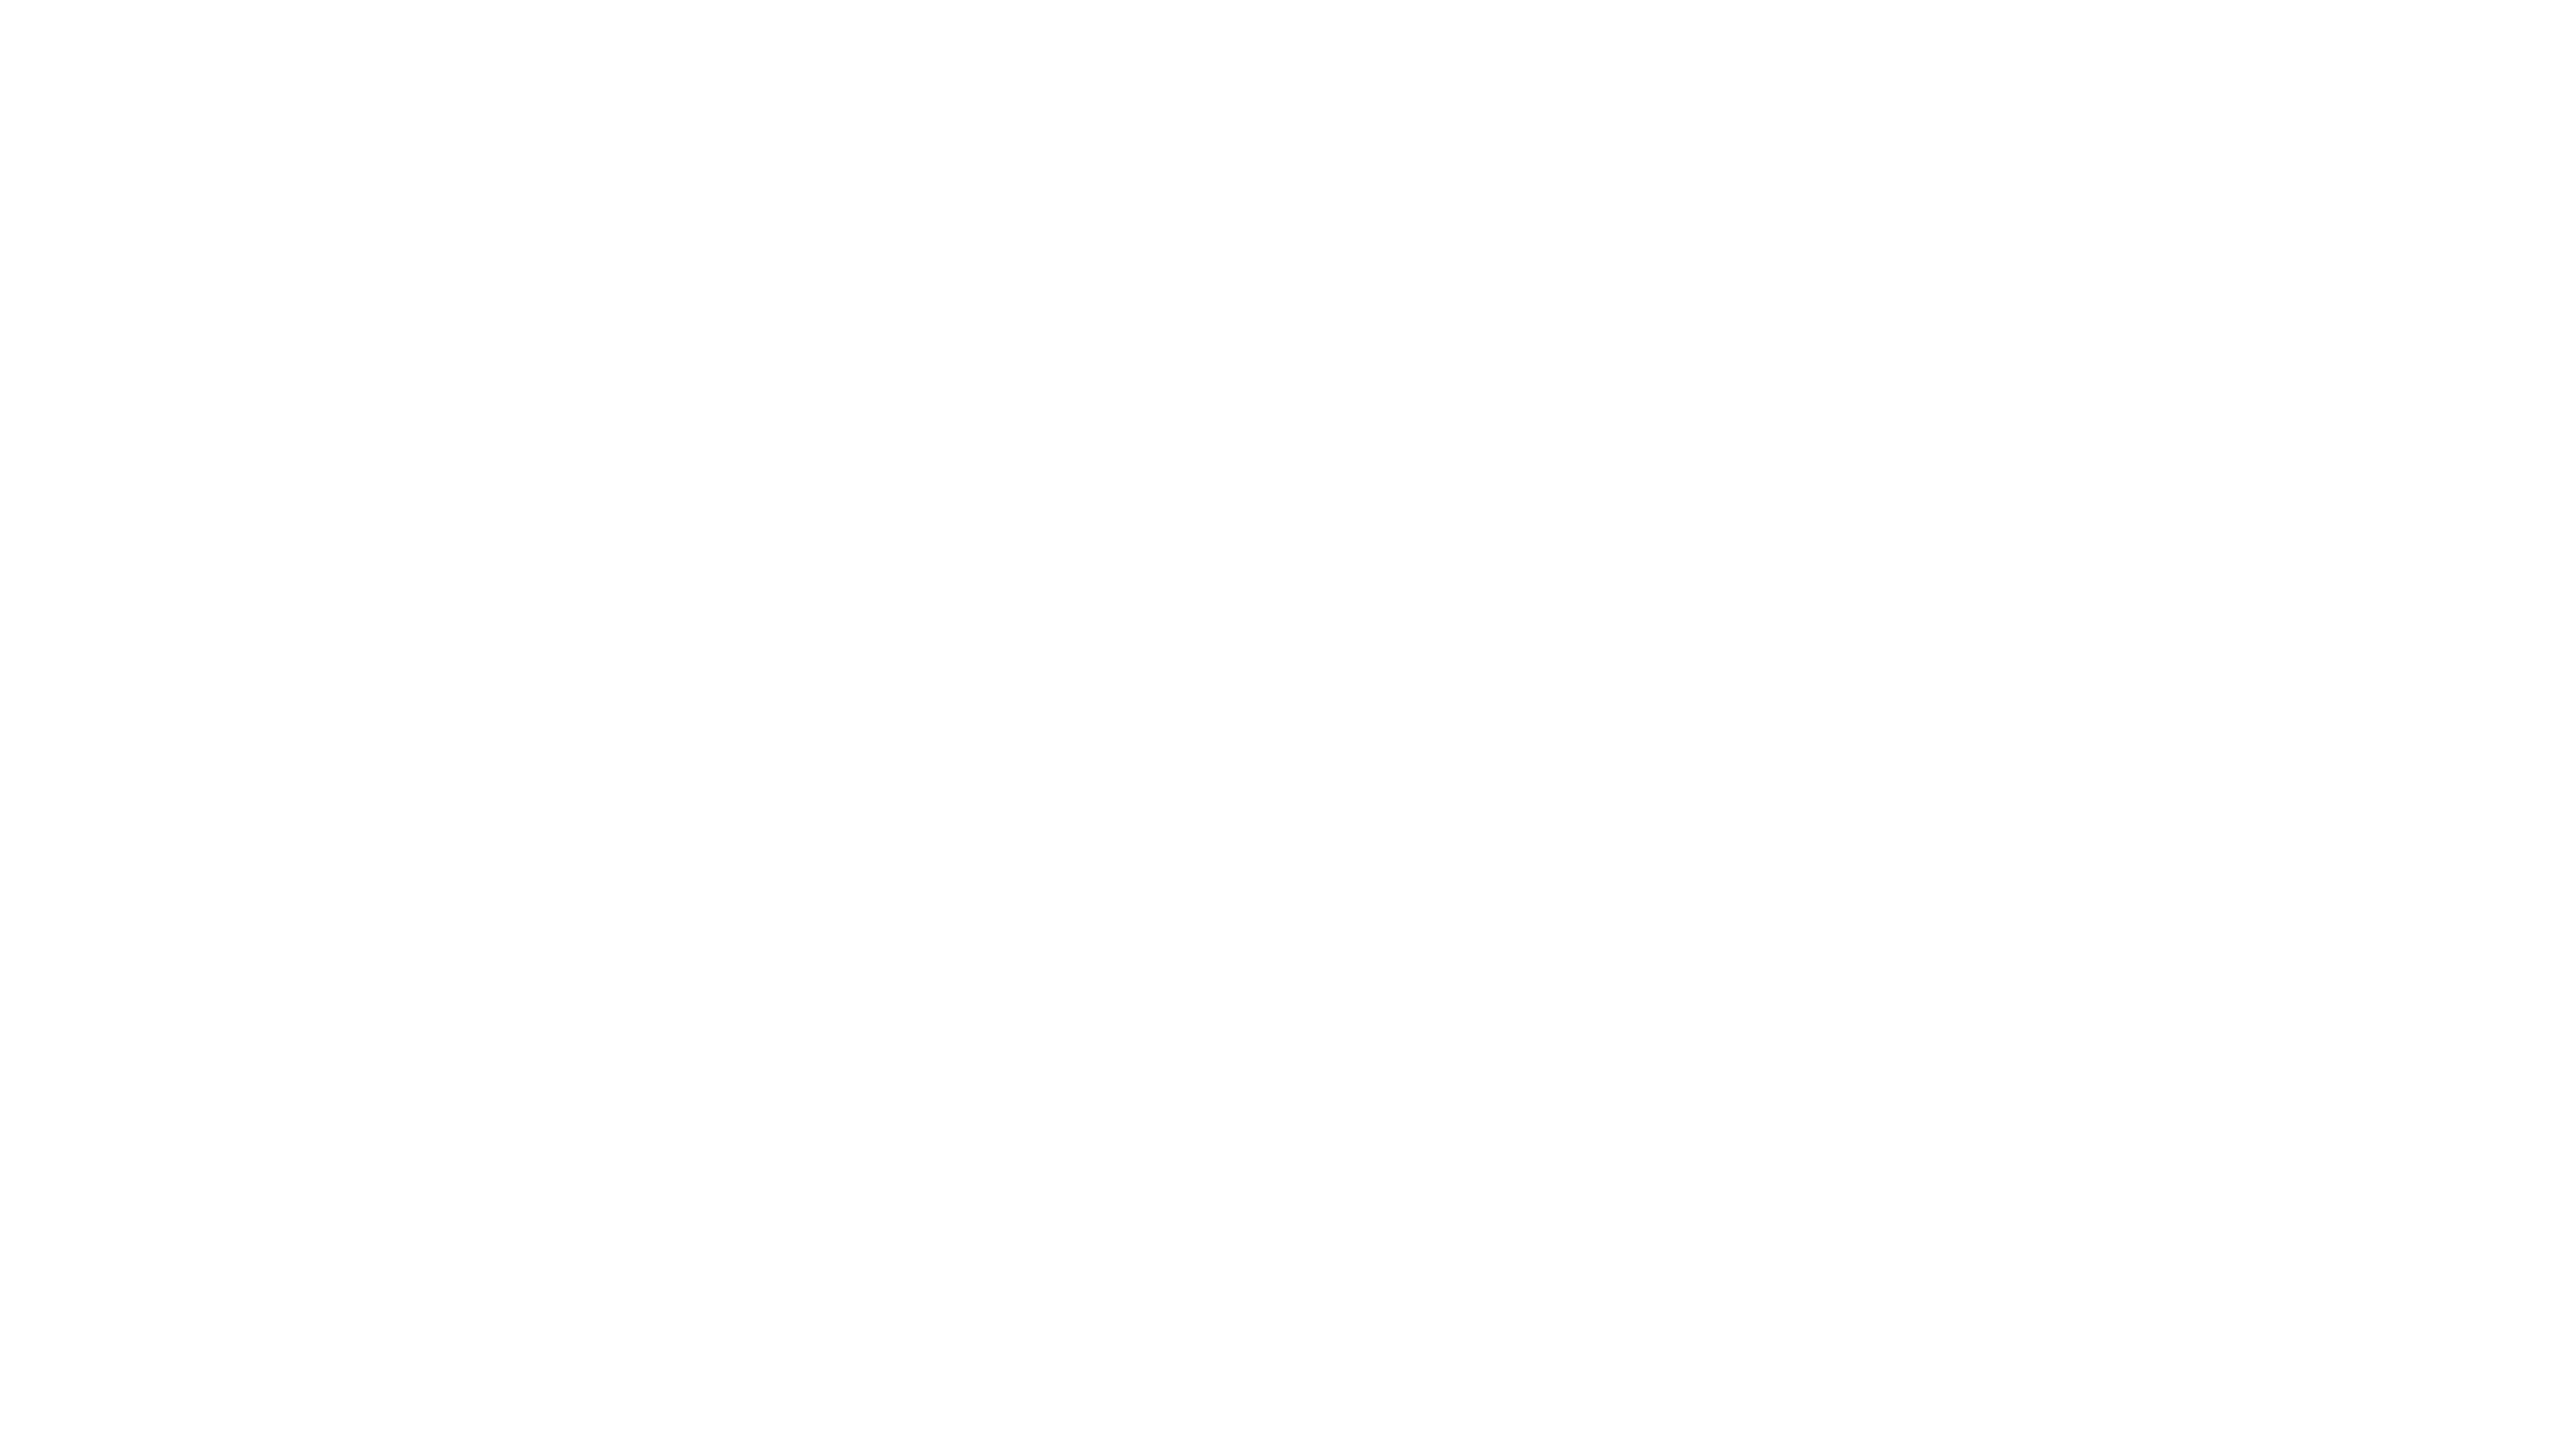 La passione